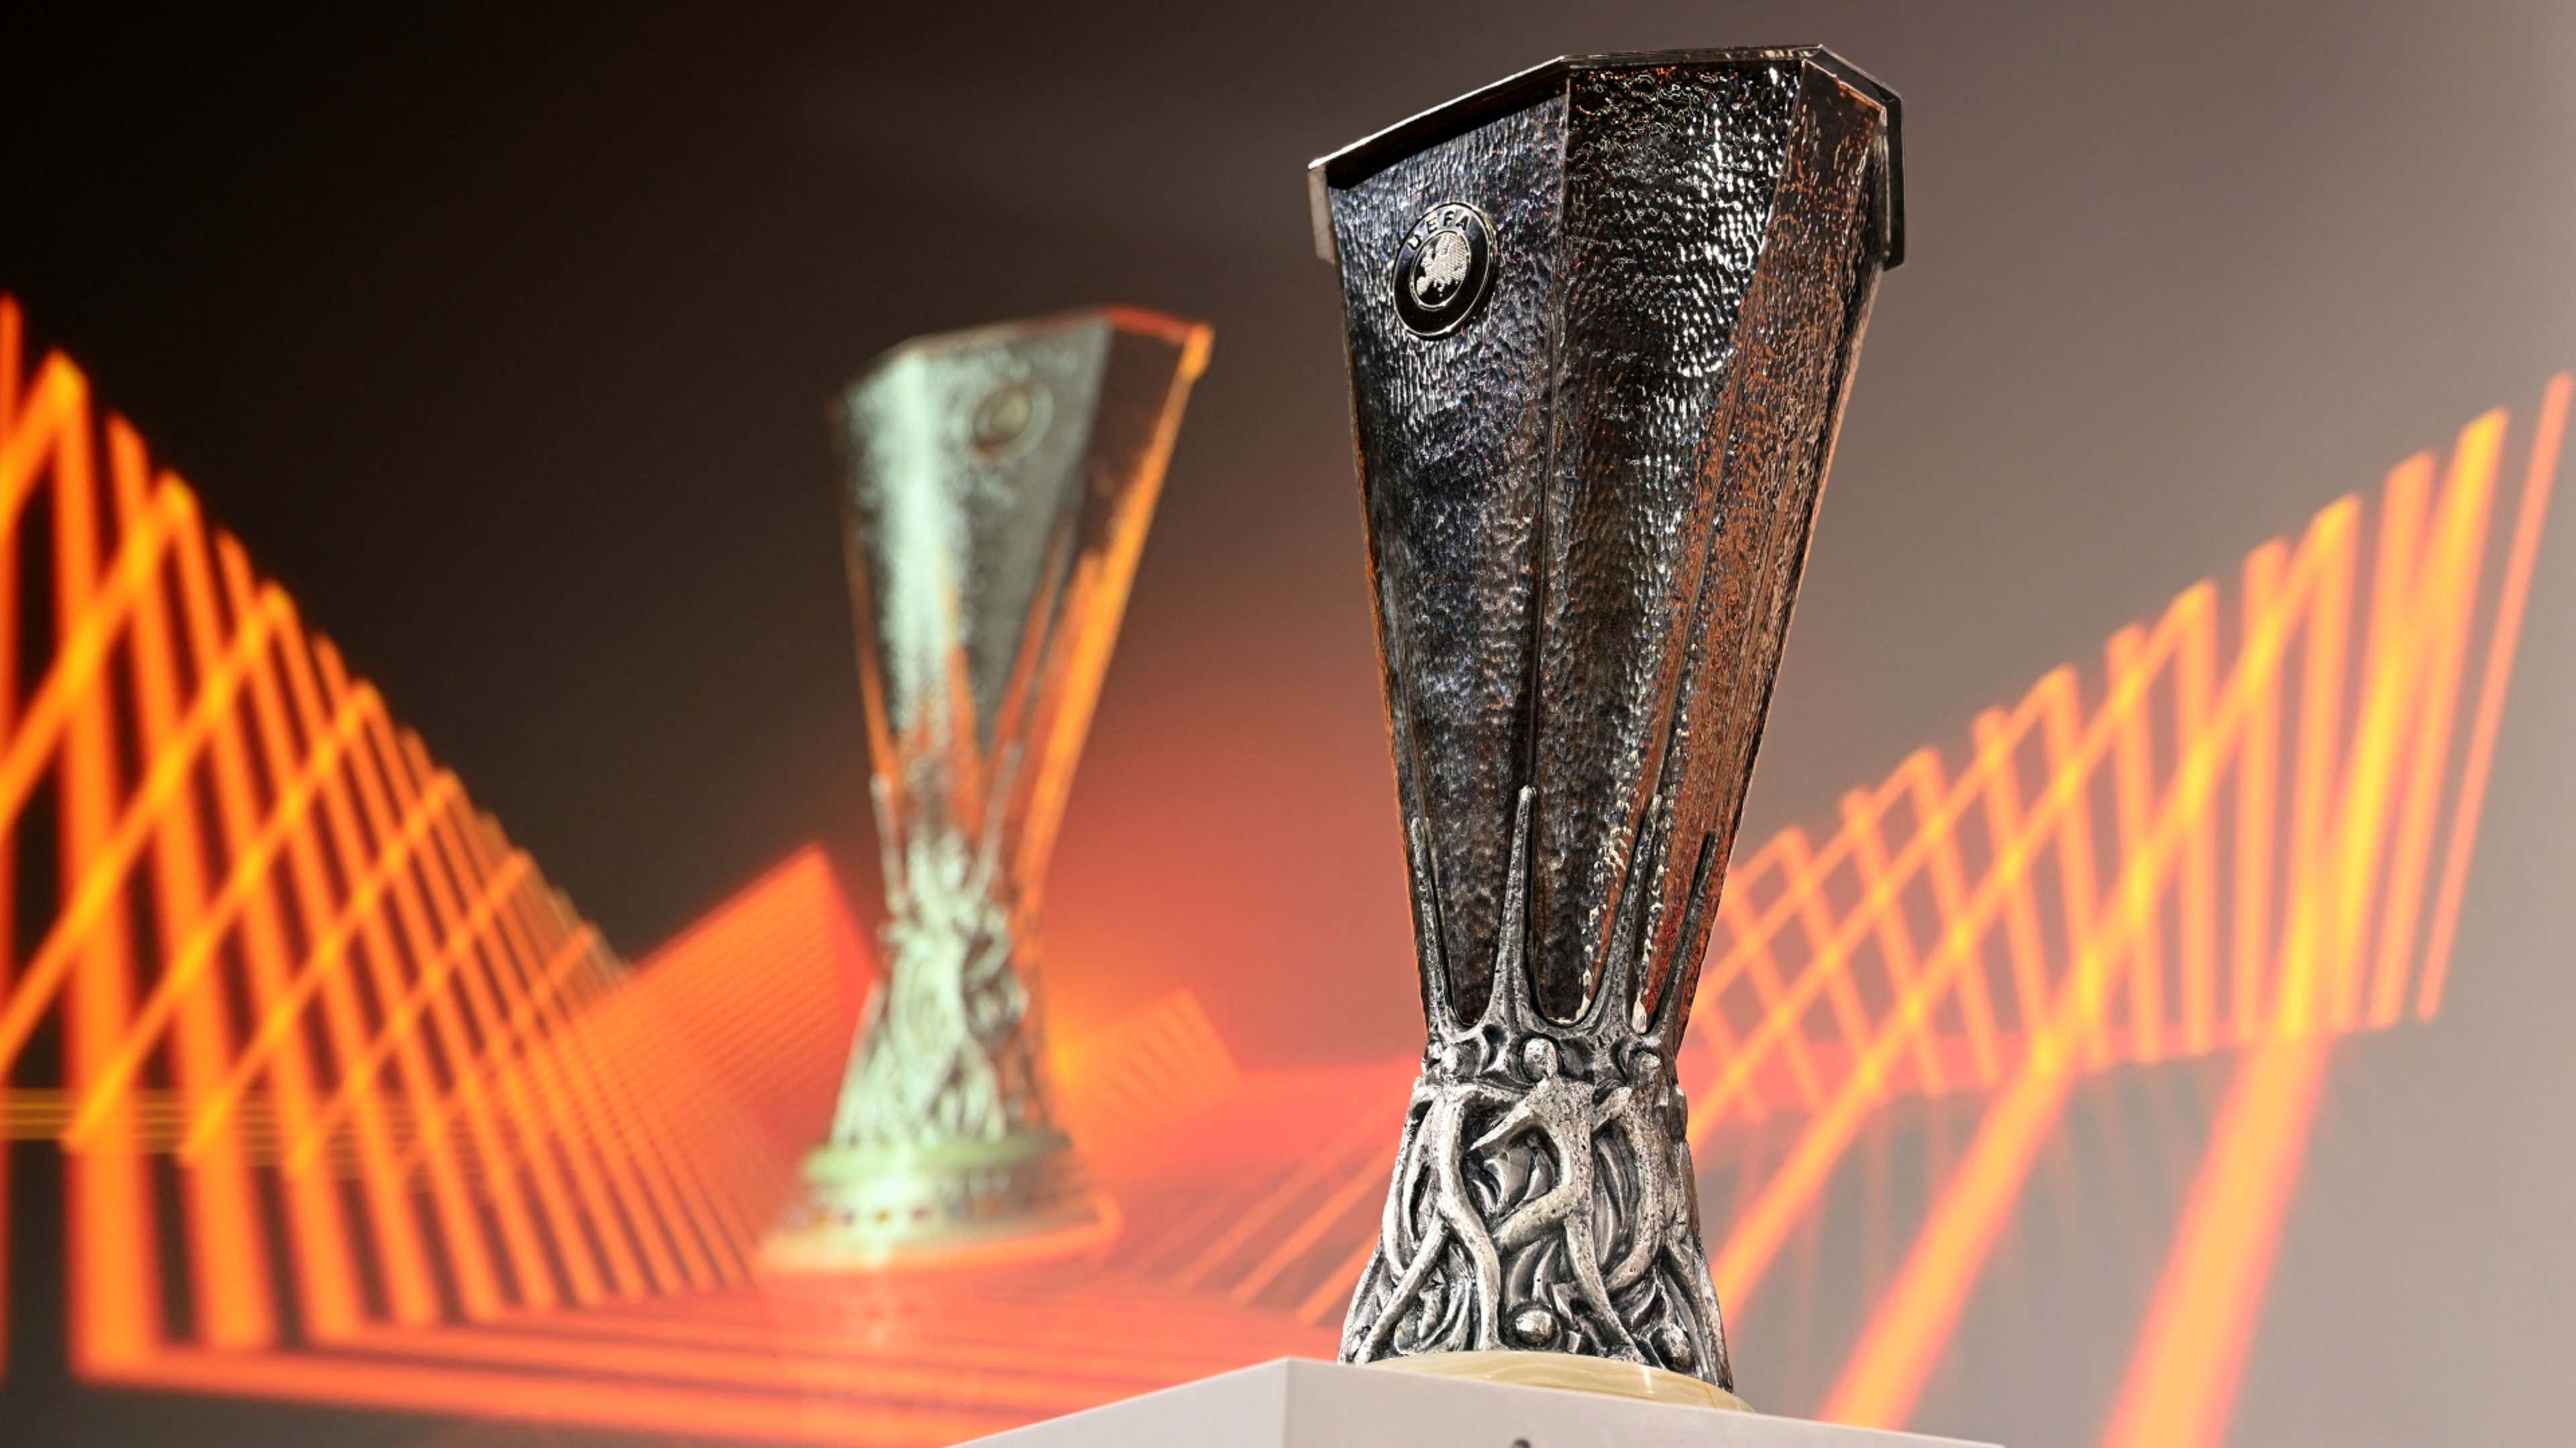 Uefa sorteia play-offs da Champions League e Liga Europa - Folha PE